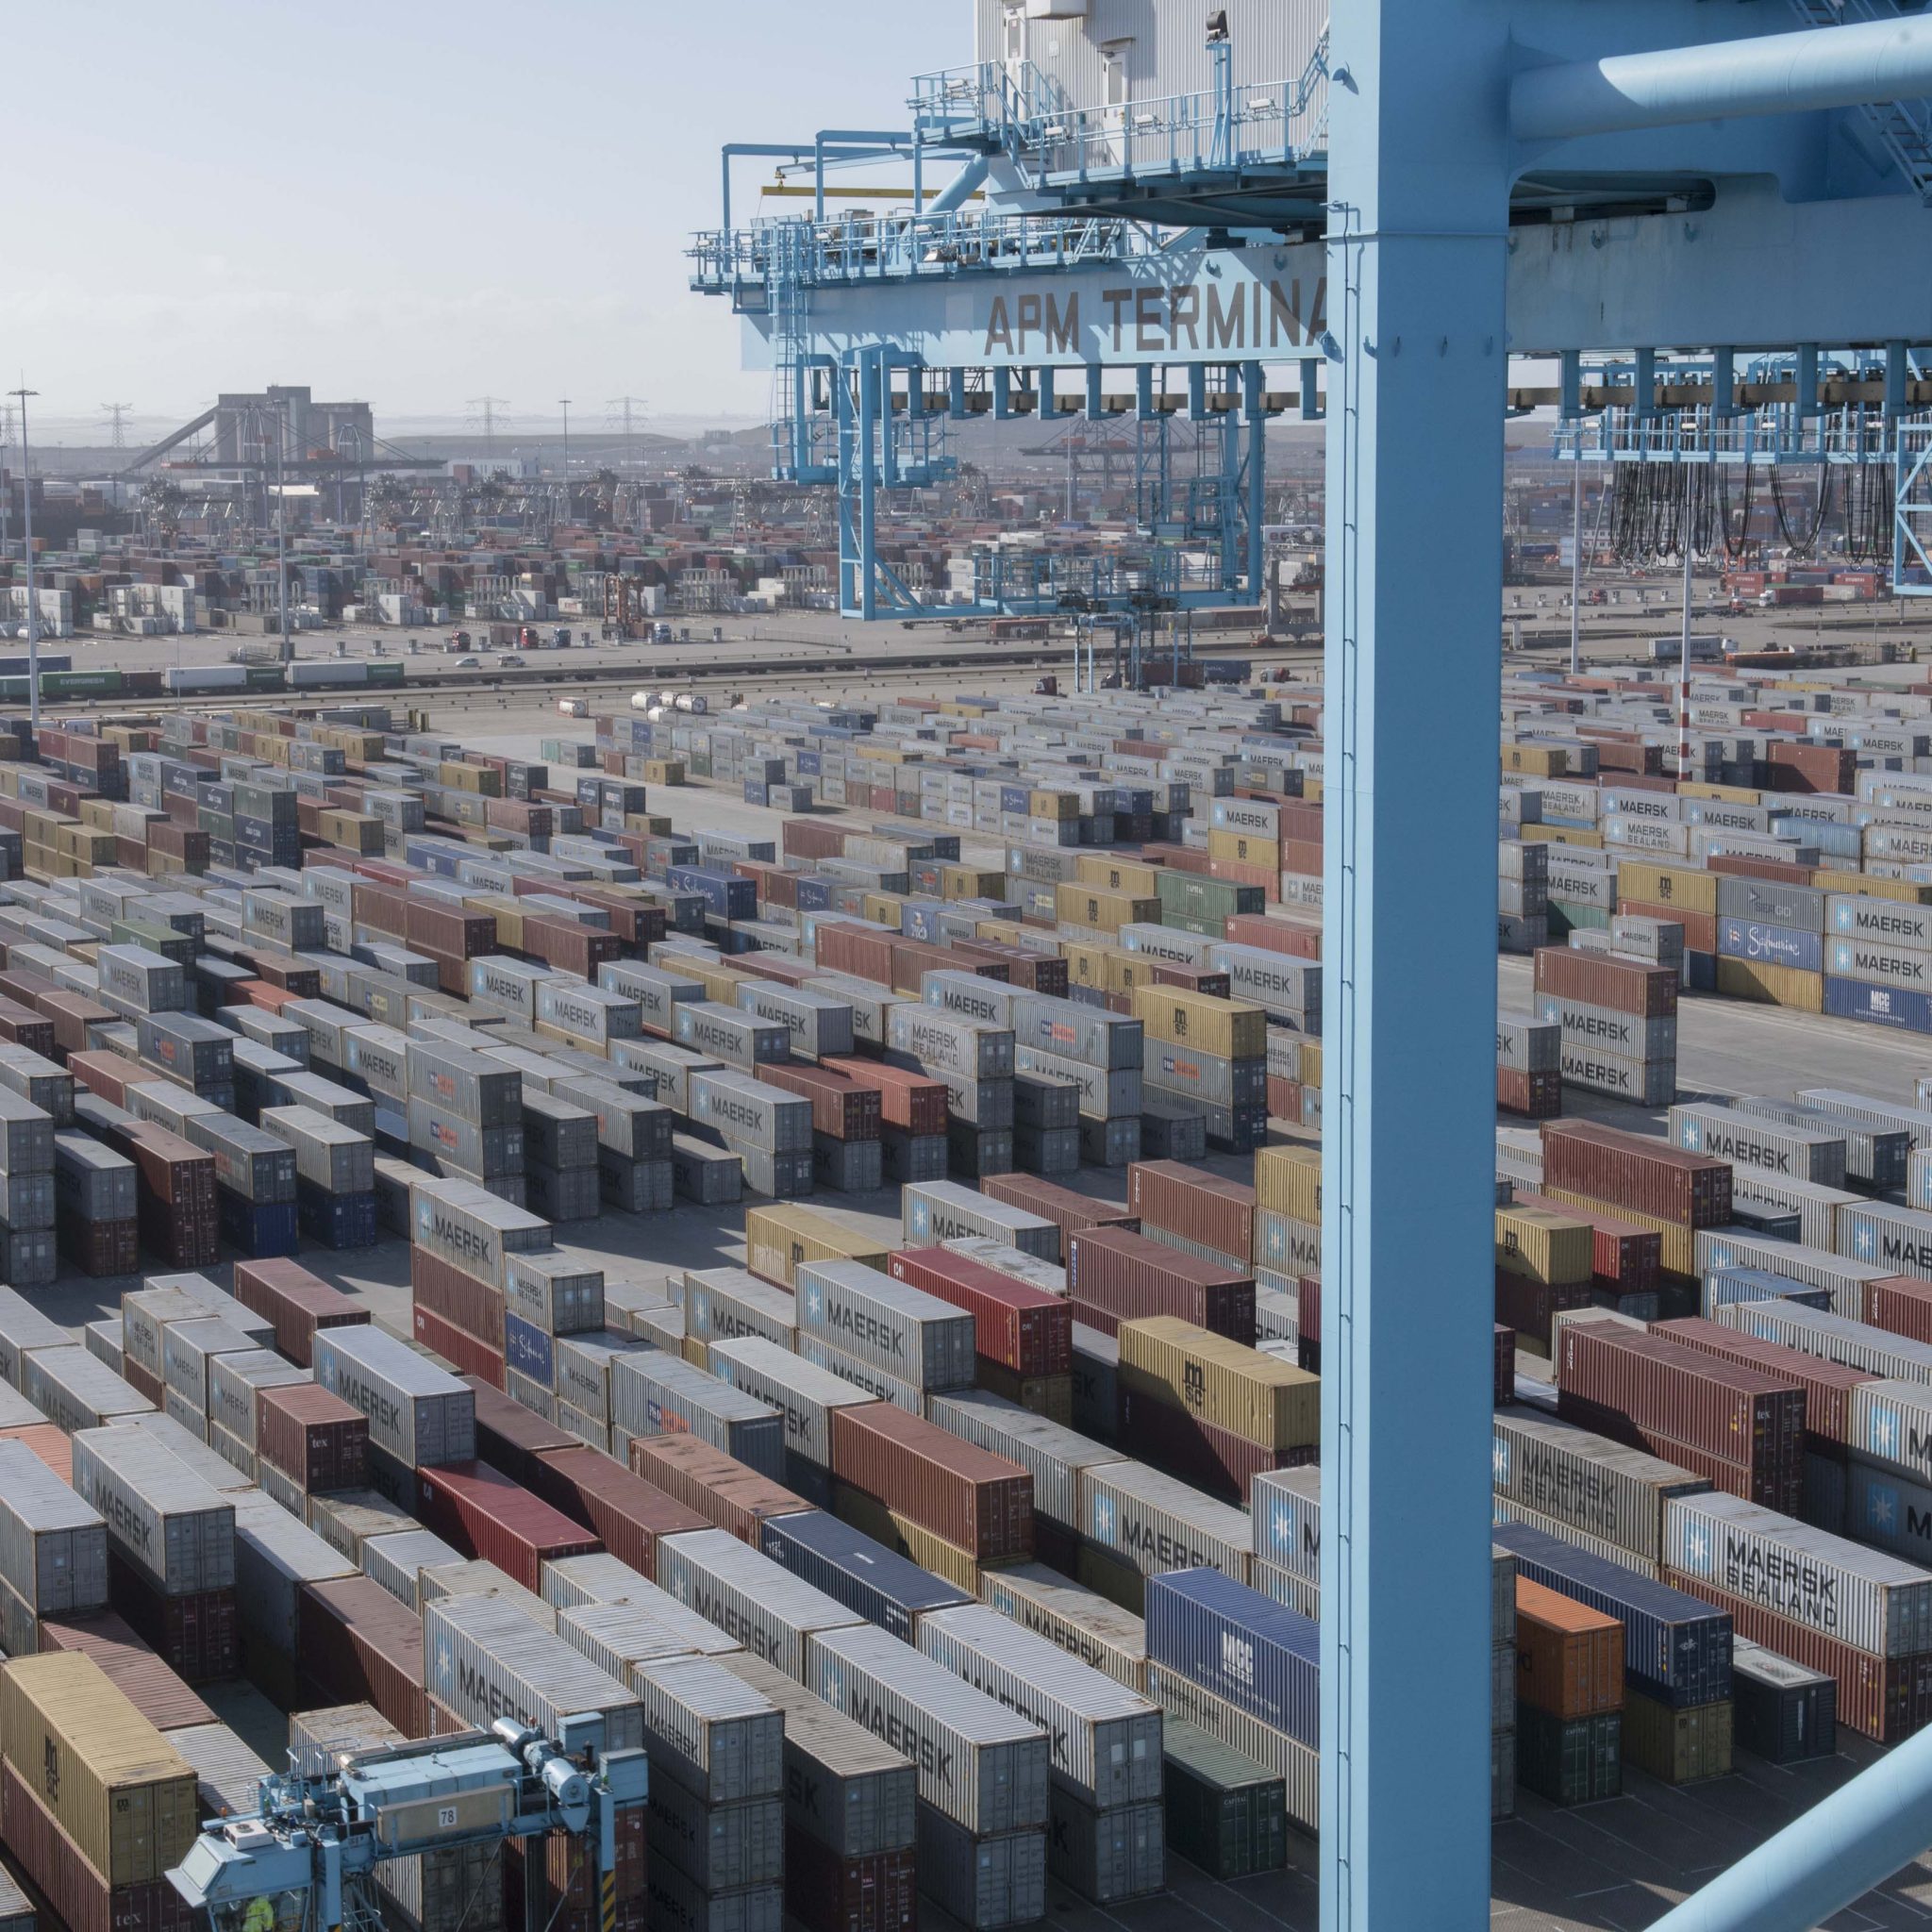 De containeroverslagindex van de Duitse instituten RWI en ISL steeg in november van dit jaar naar het hoogste niveau in jaren. (Foto Erik van Huizen)